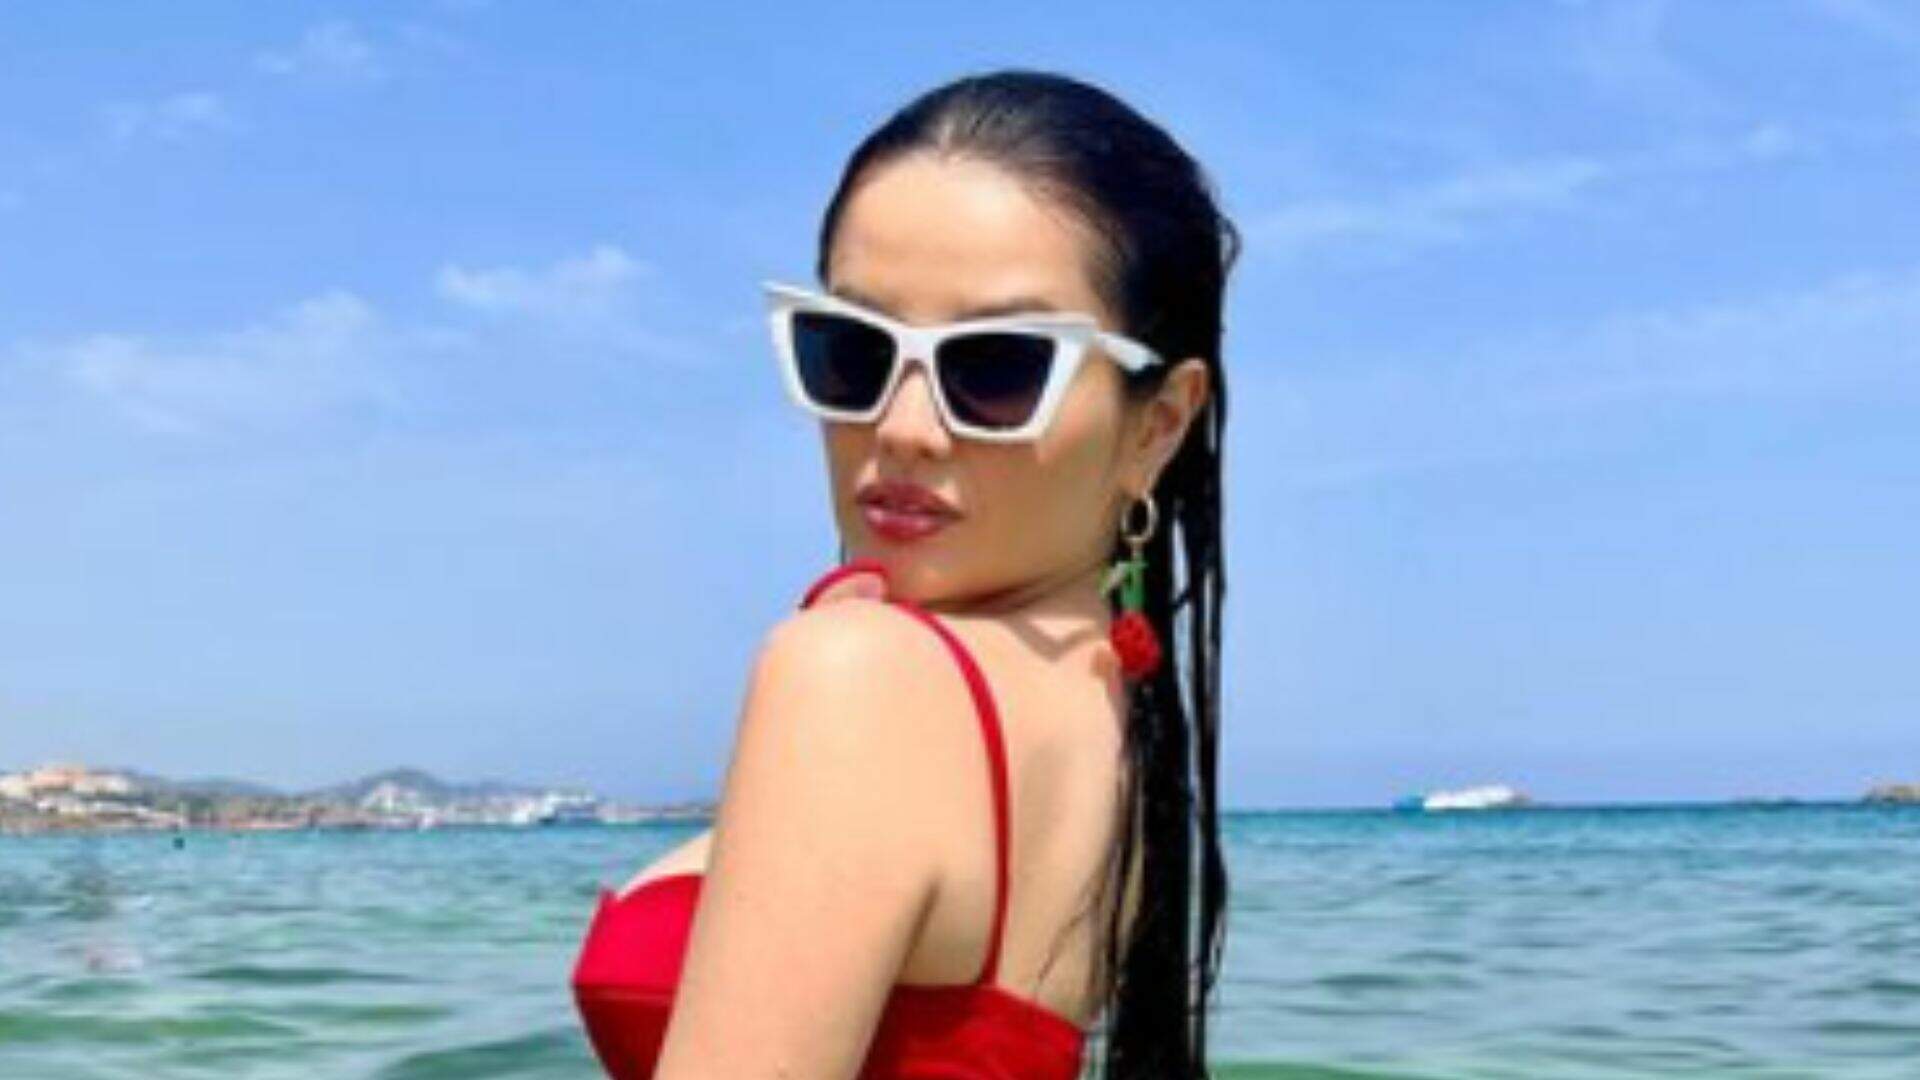 Juliette deixa espanhóis de boca aberta com biquíni mínimo e volume molhado na praia: “Causando” - Metropolitana FM